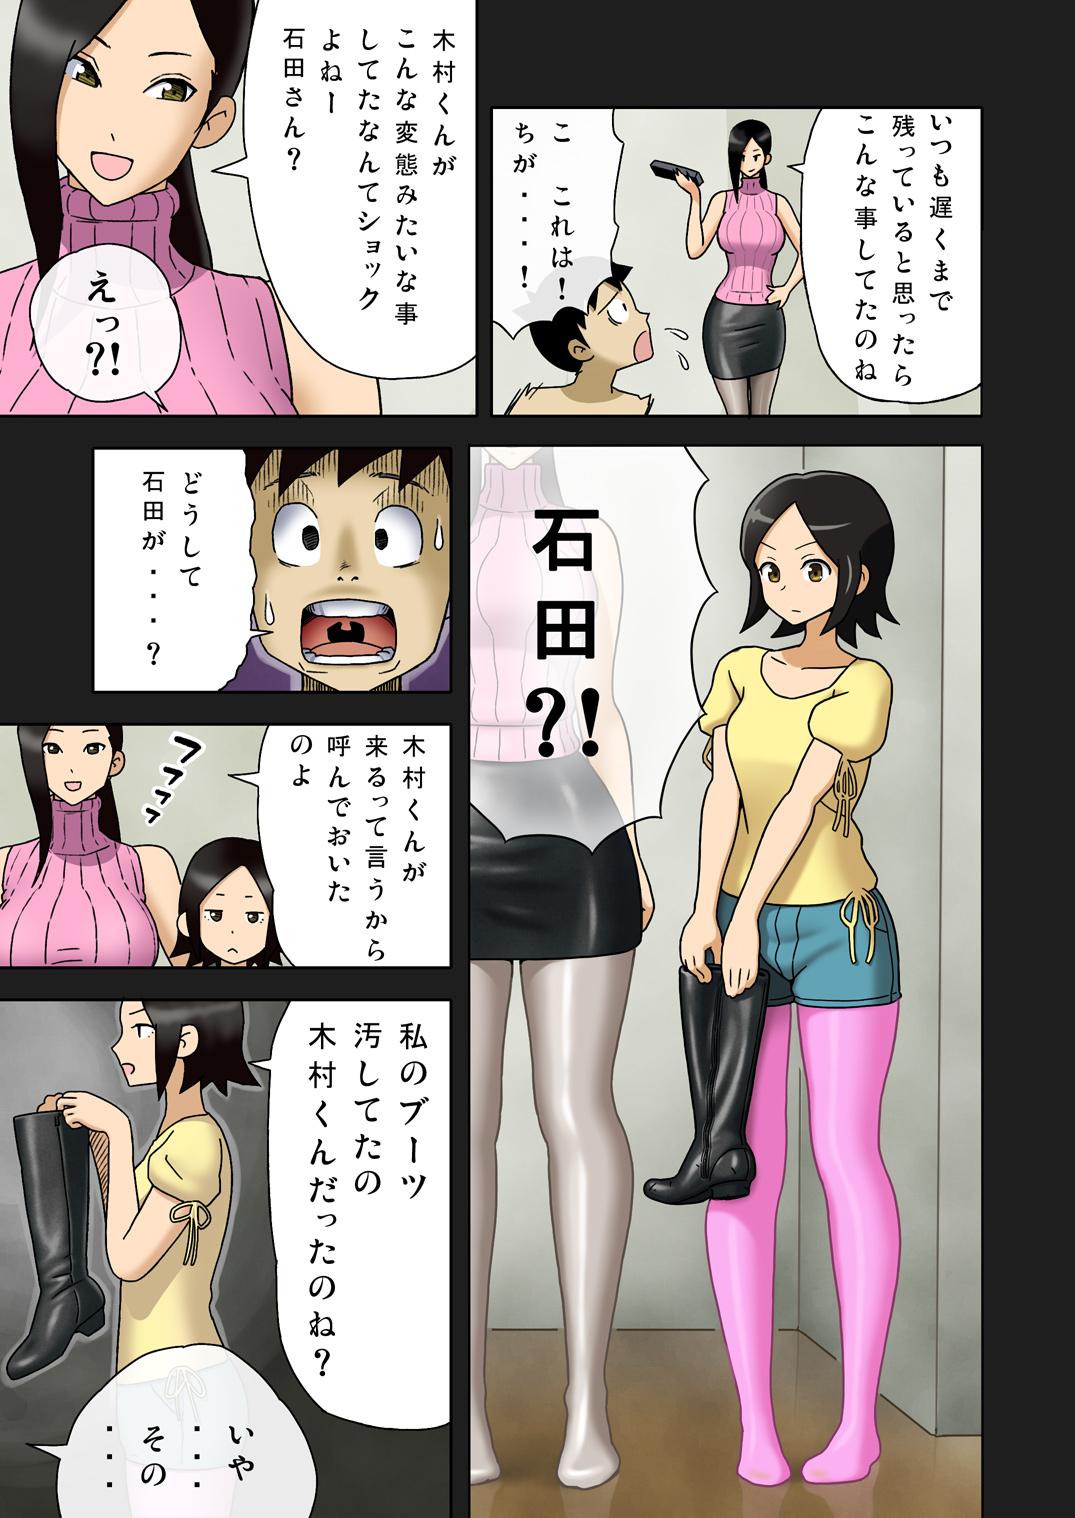 [Enka Boots] Enka Boots no Manga 1 - Juku no Sensei ga Joou-sama V2.0 8